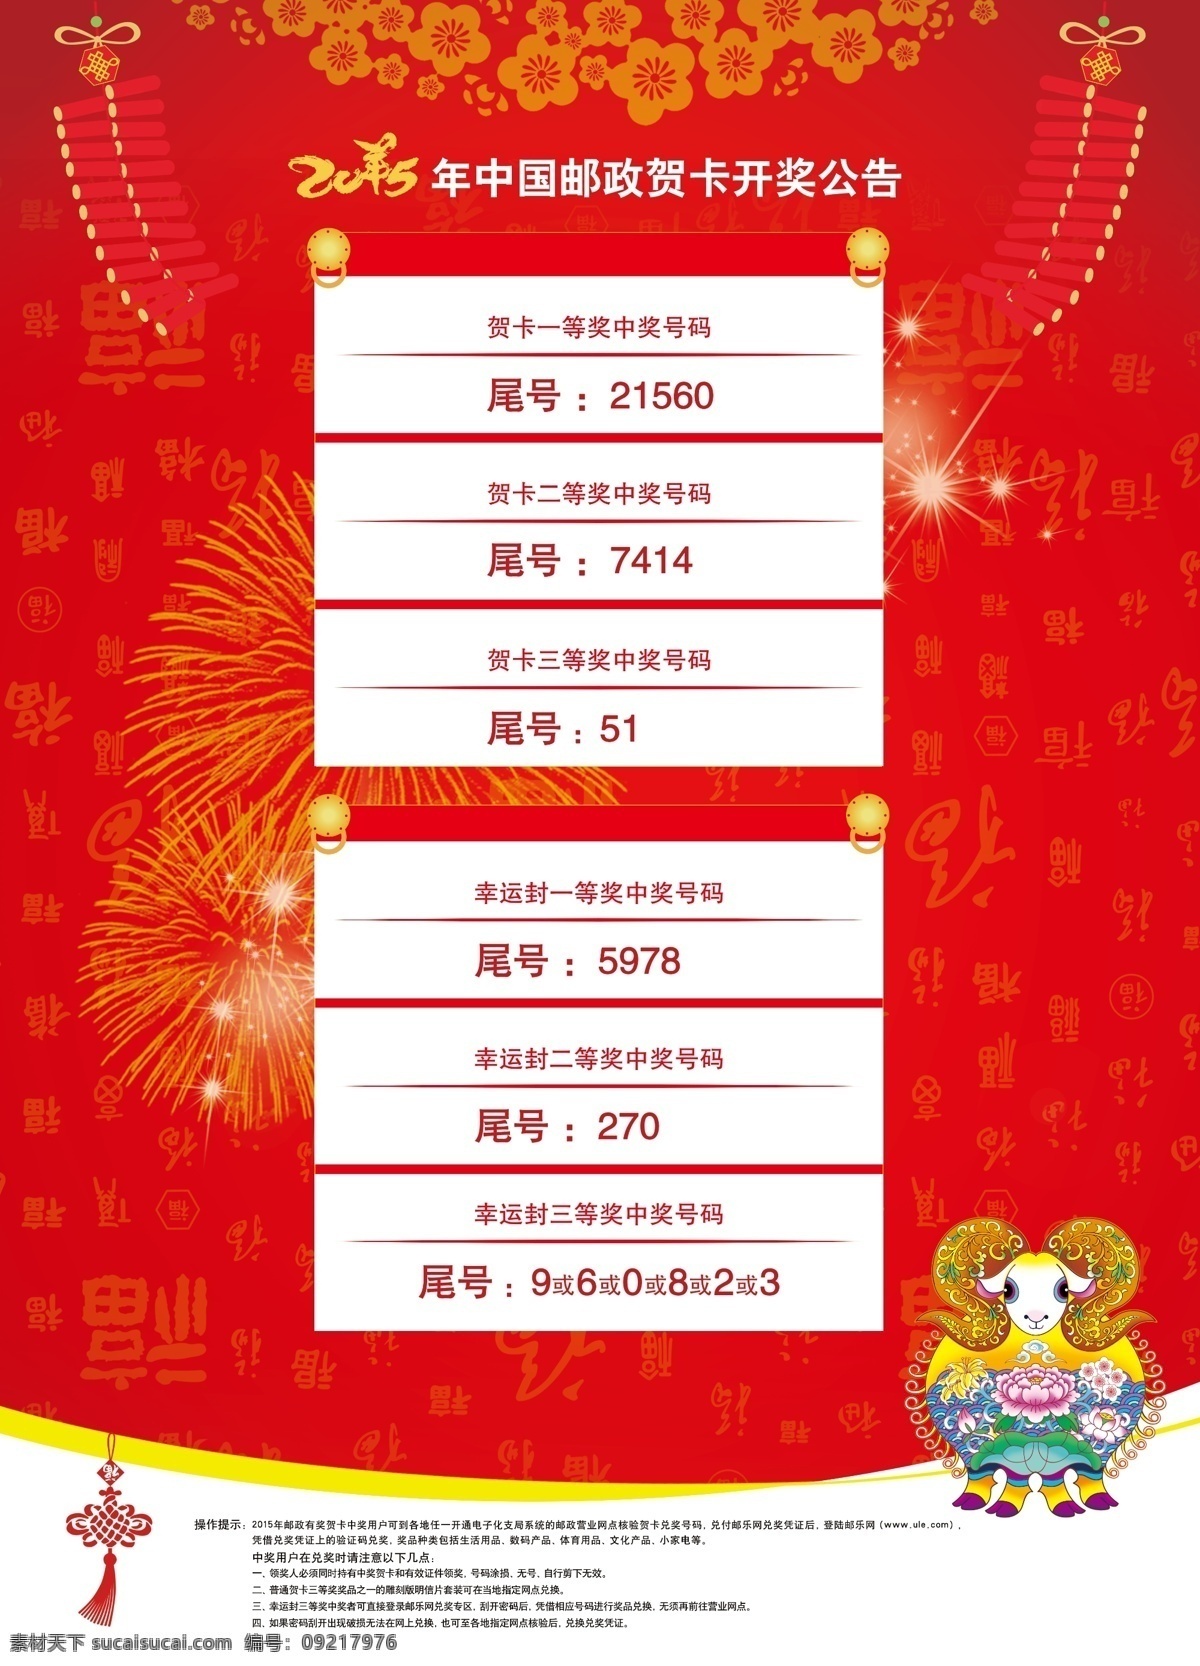 2015 中国 邮政 贺卡 开奖公告 中国邮政 开奖 公告 招贴设计